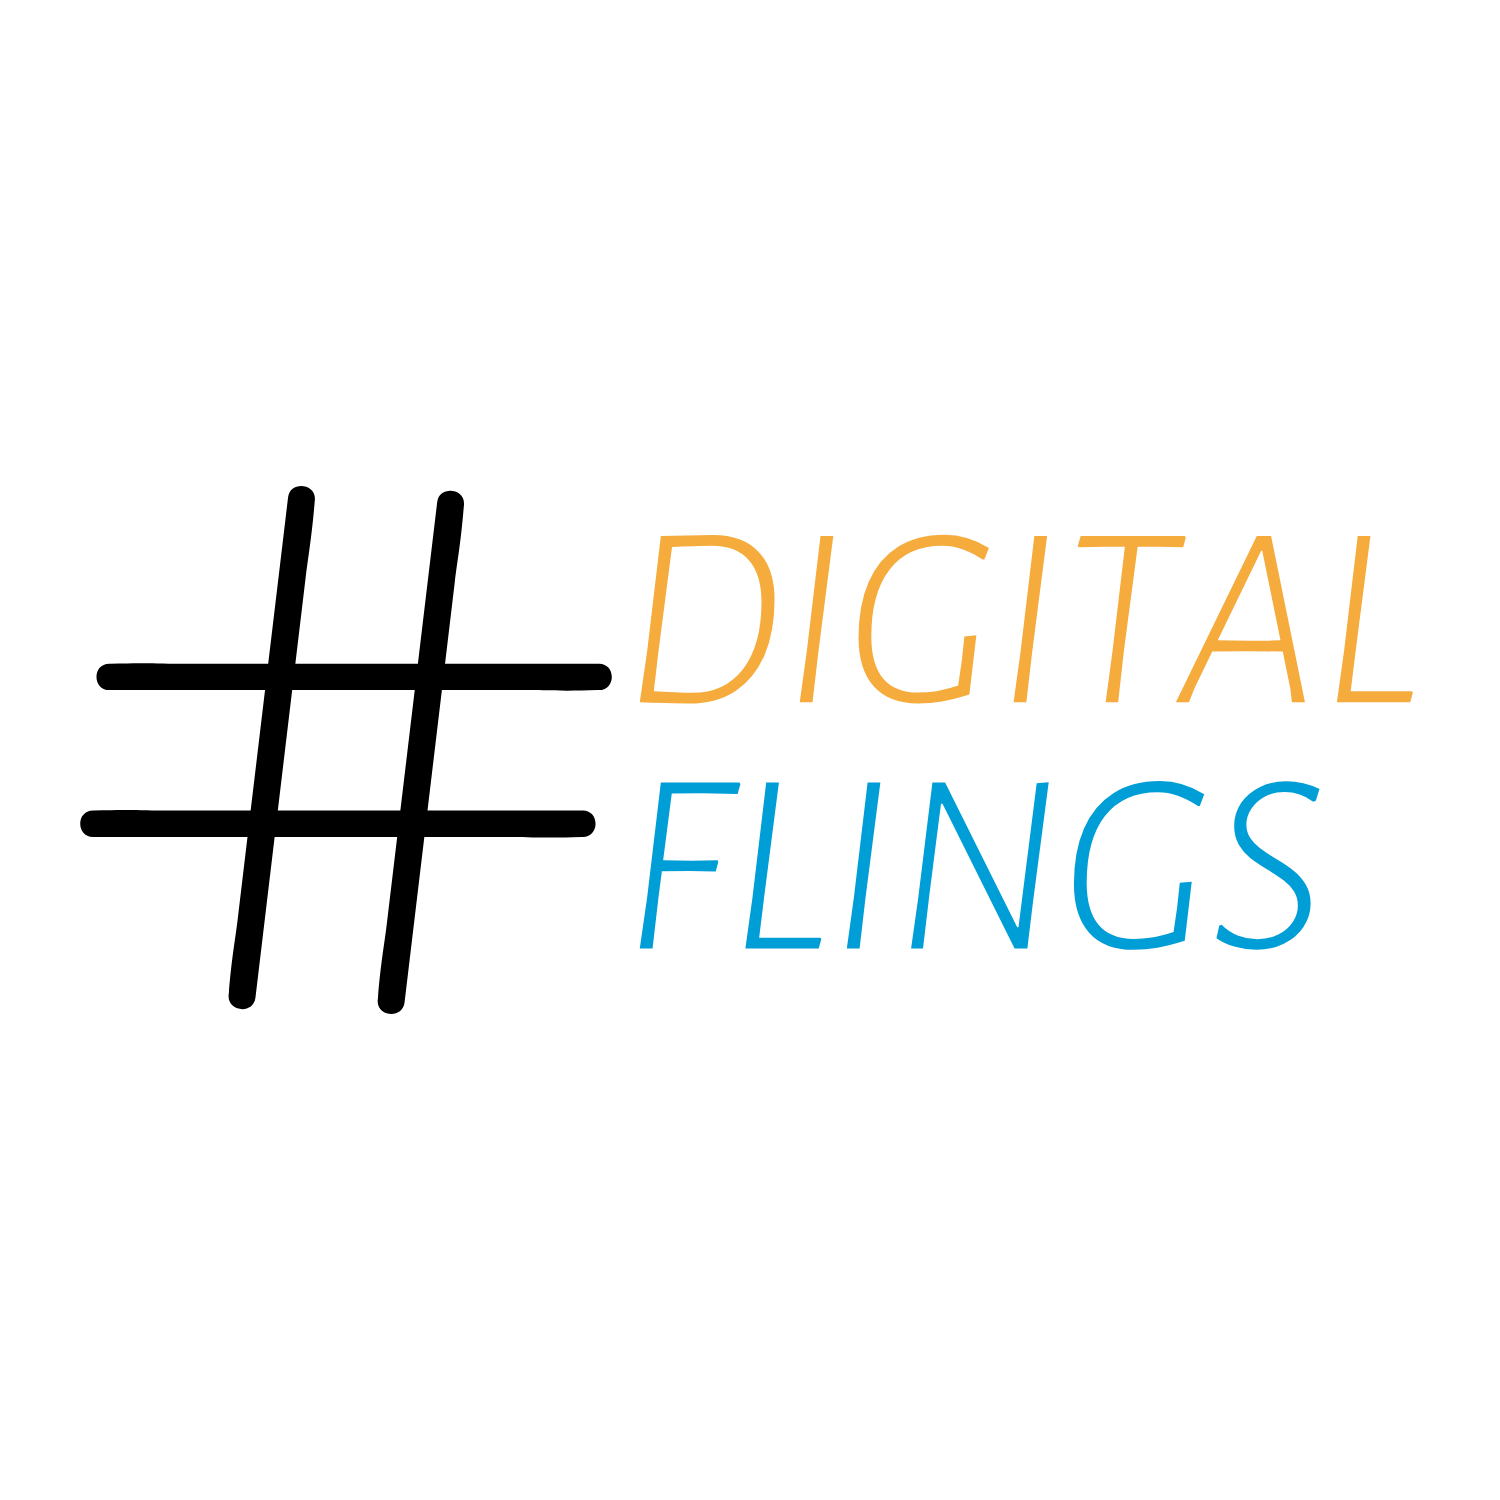 Digital Flings